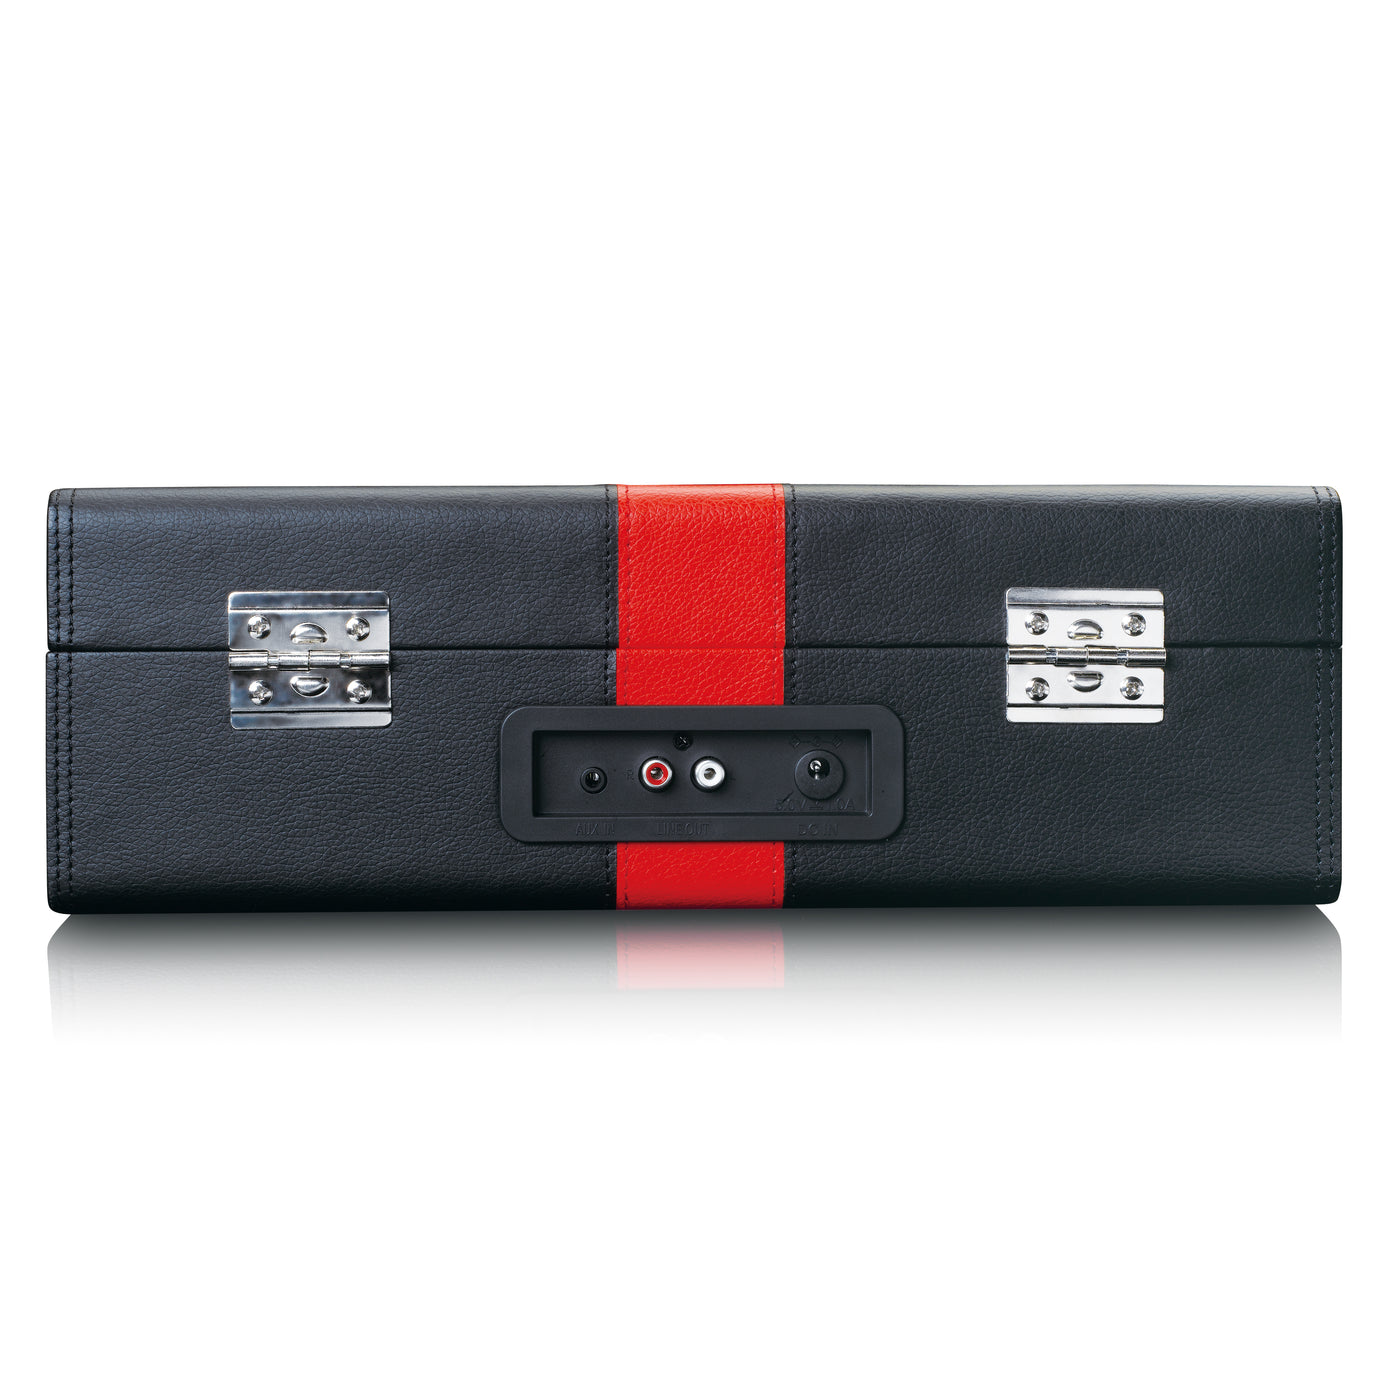 Classic Phono TT-110BKRD - Plattenspieler mit Bluetooth®-Empfang und integrierten Lautsprechern - Schwarz/Rot